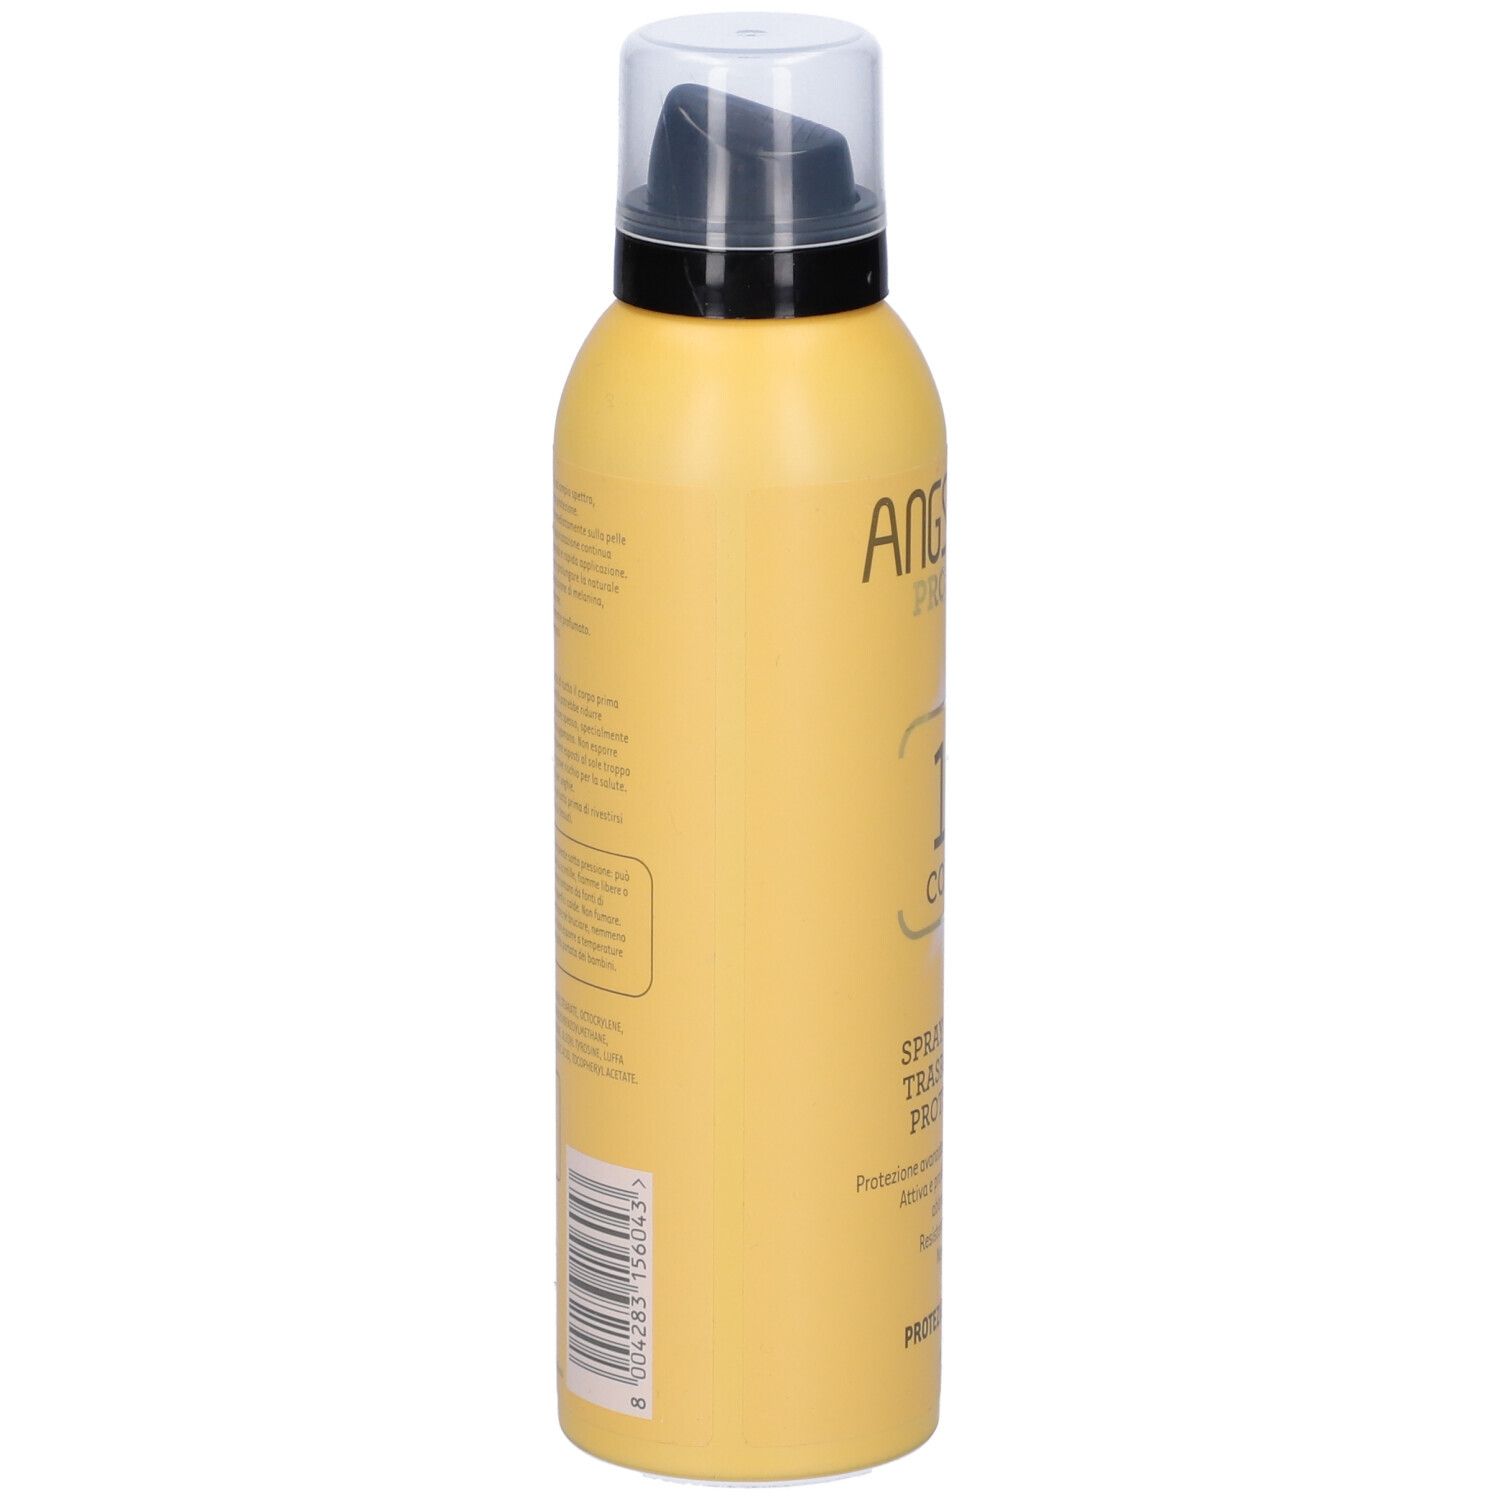 Angstrom Protect Spray Solare Trasparente SPF 15